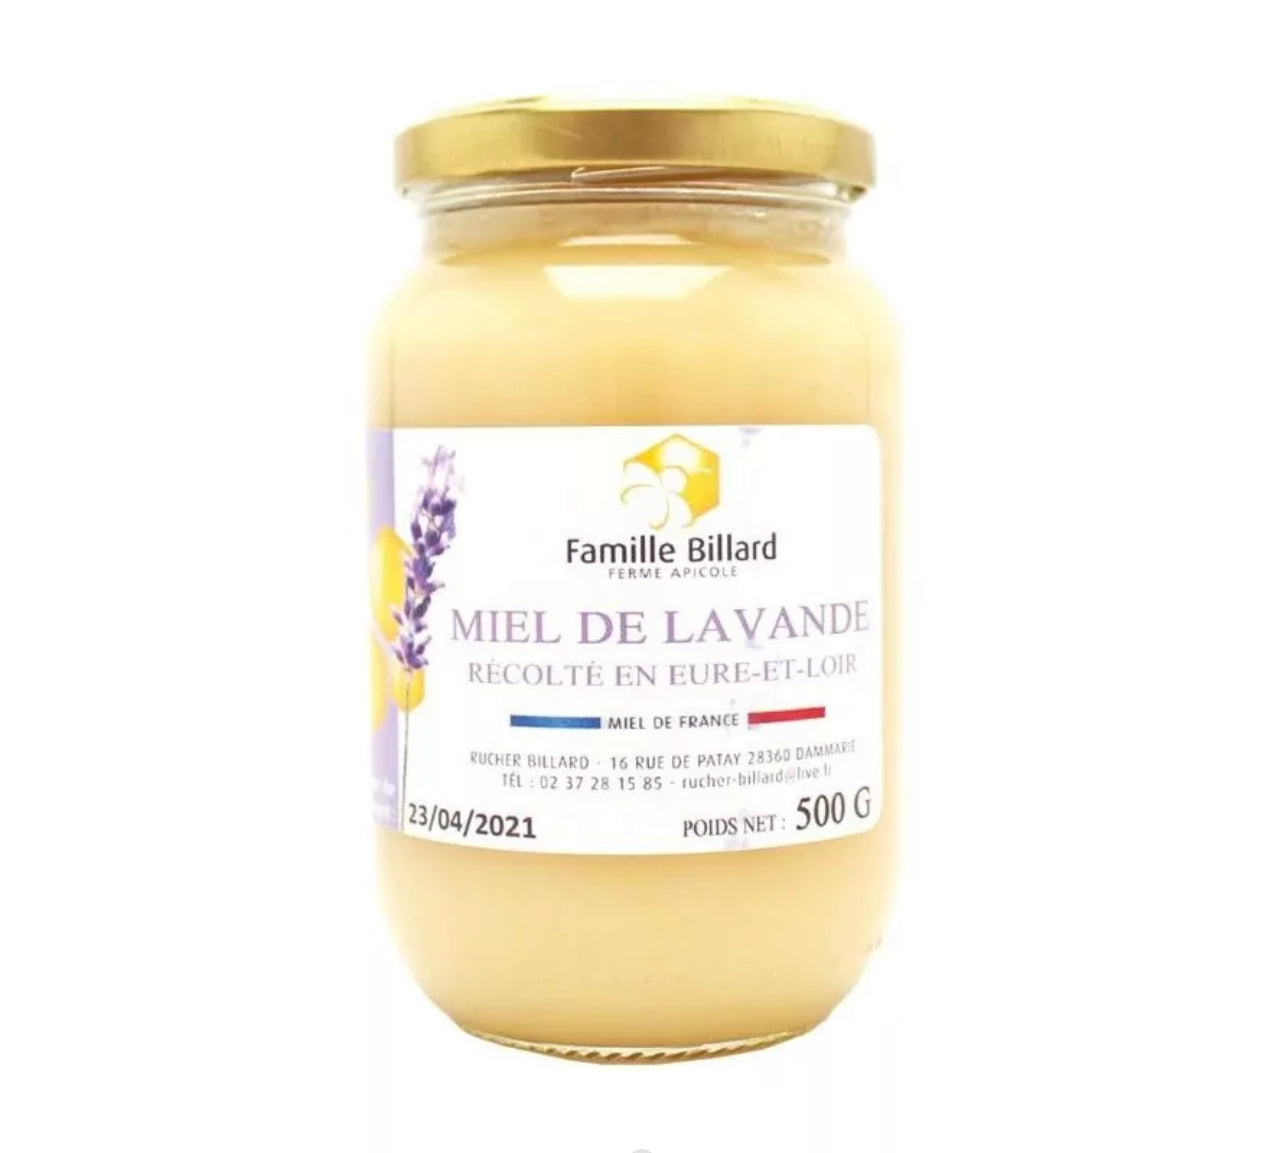 Miel de lavande origine Eure-et-Loir - 500g